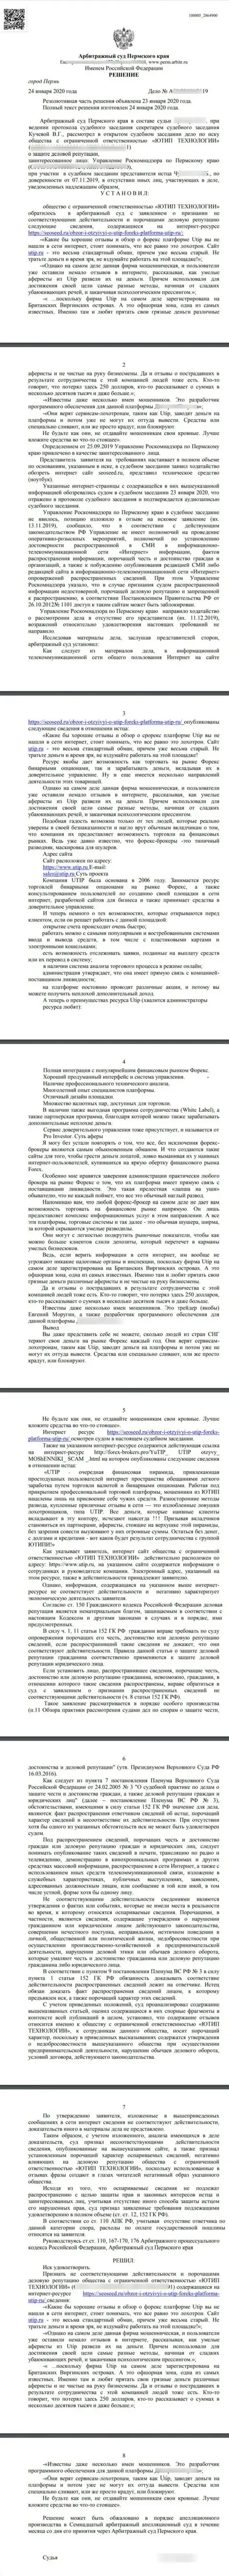 Иск мошенников UTIP в адрес сайта seoseed ru, который удовлетворён был самым гуманным судом в мире